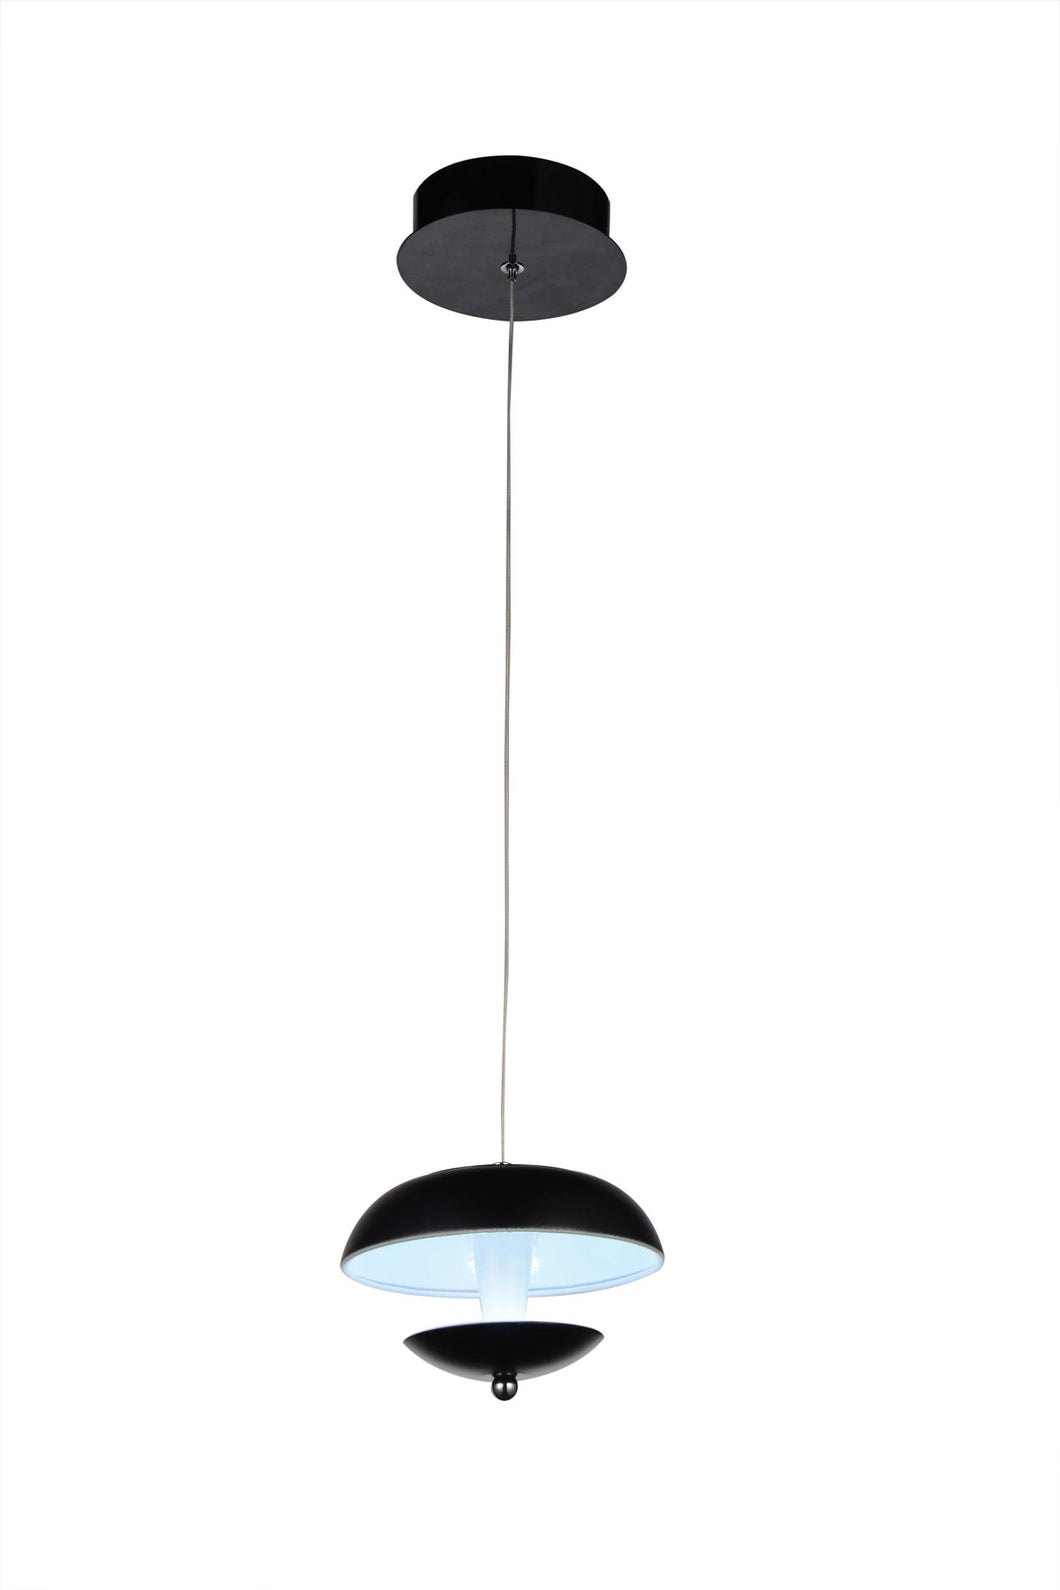 LED Down Mini Pendant with Black & White finish